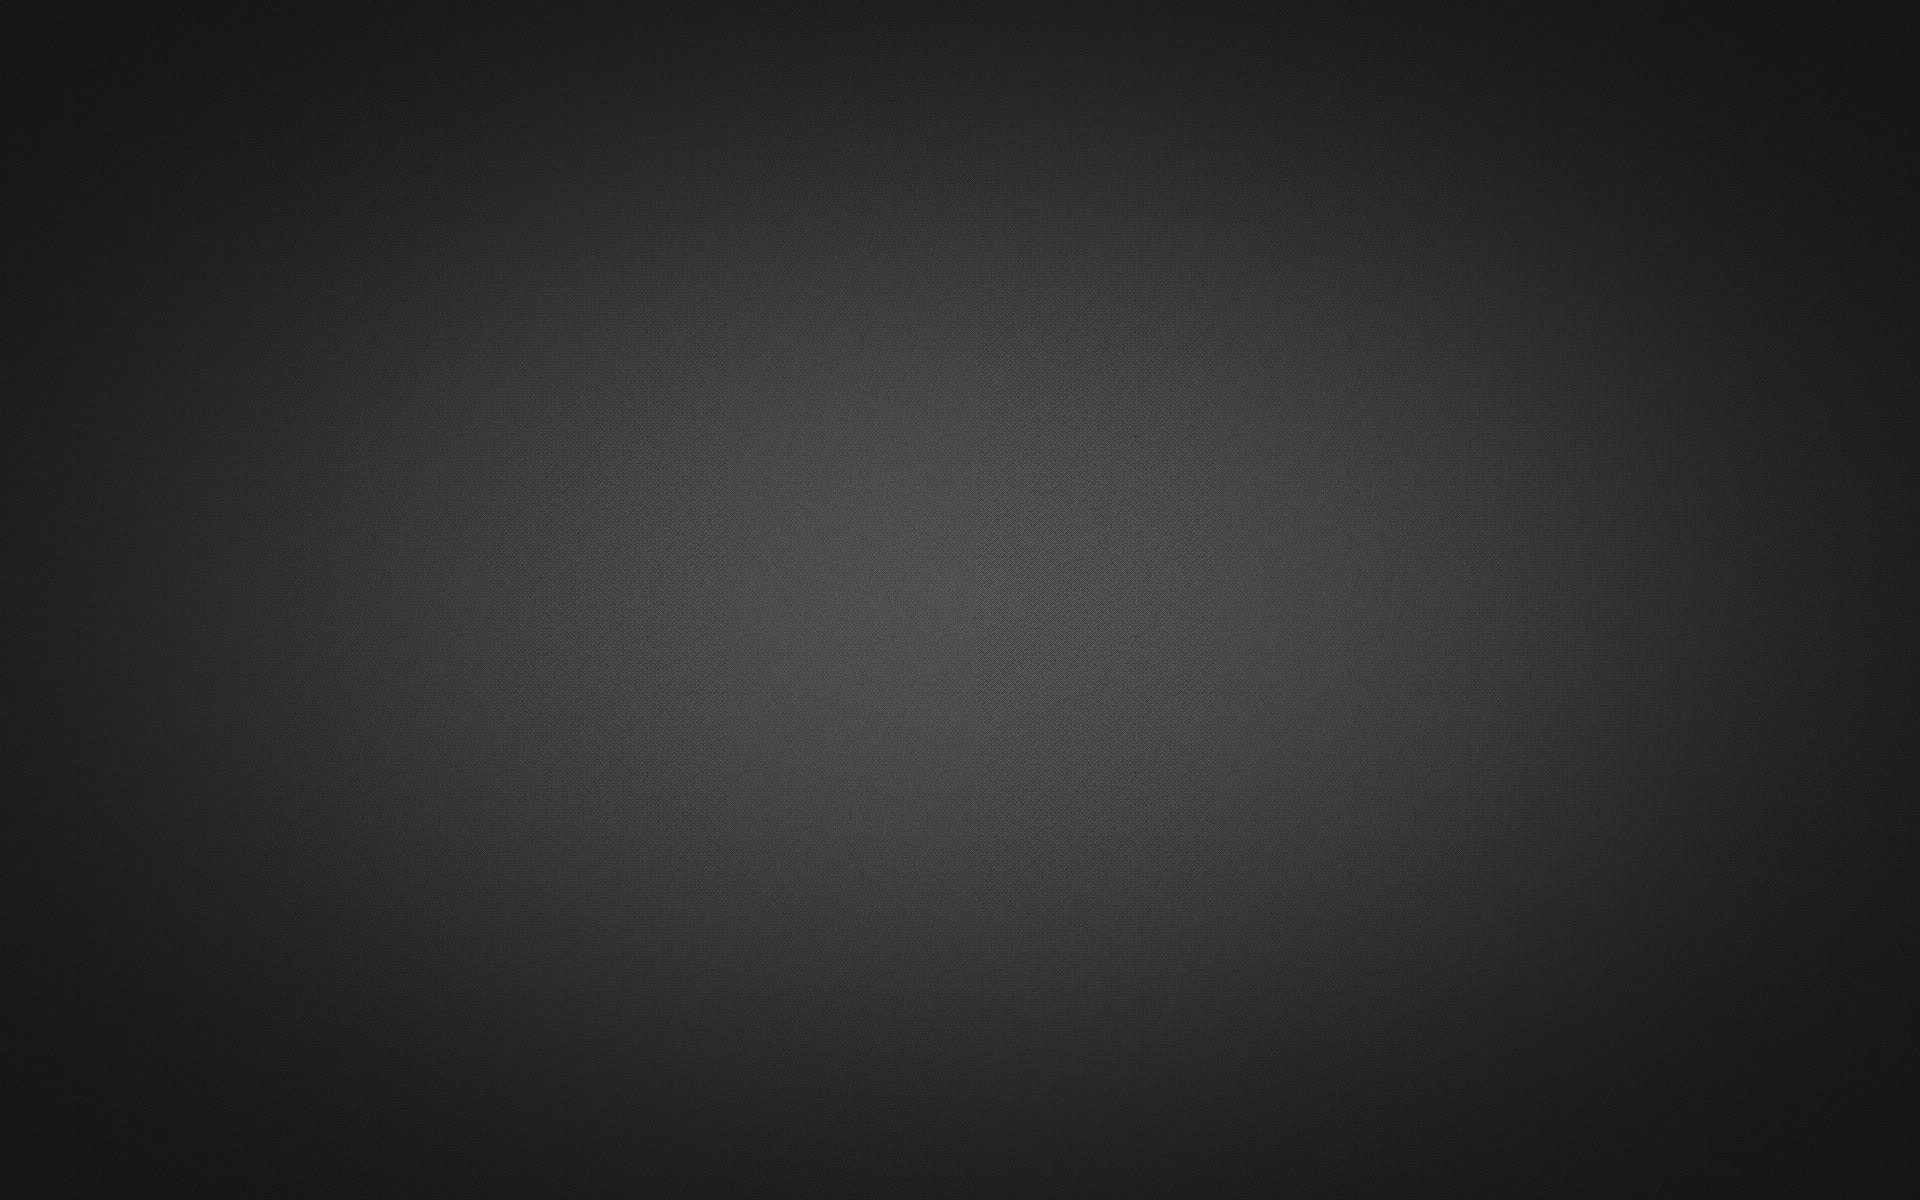 [49+] Black and Silver Wallpaper - WallpaperSafari